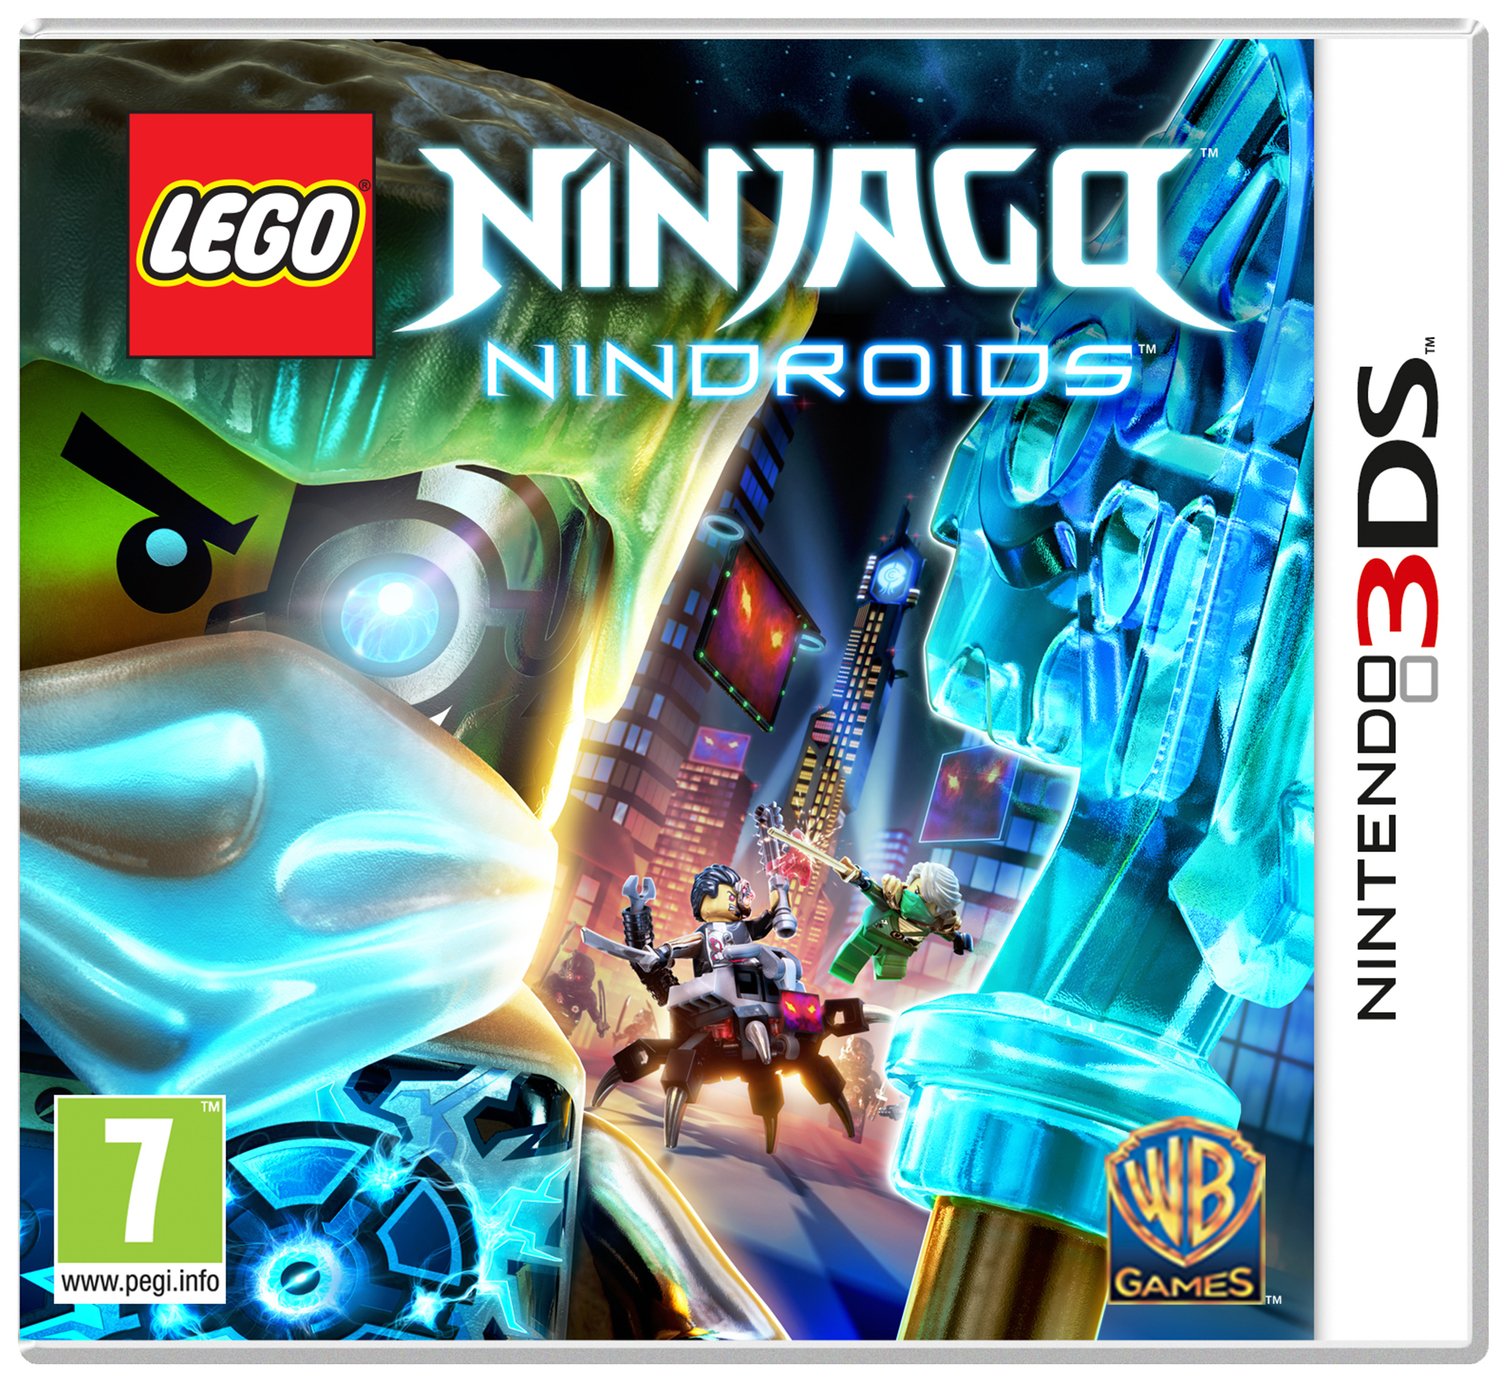 LEGO Ninjago: Nindroids 3DS Game